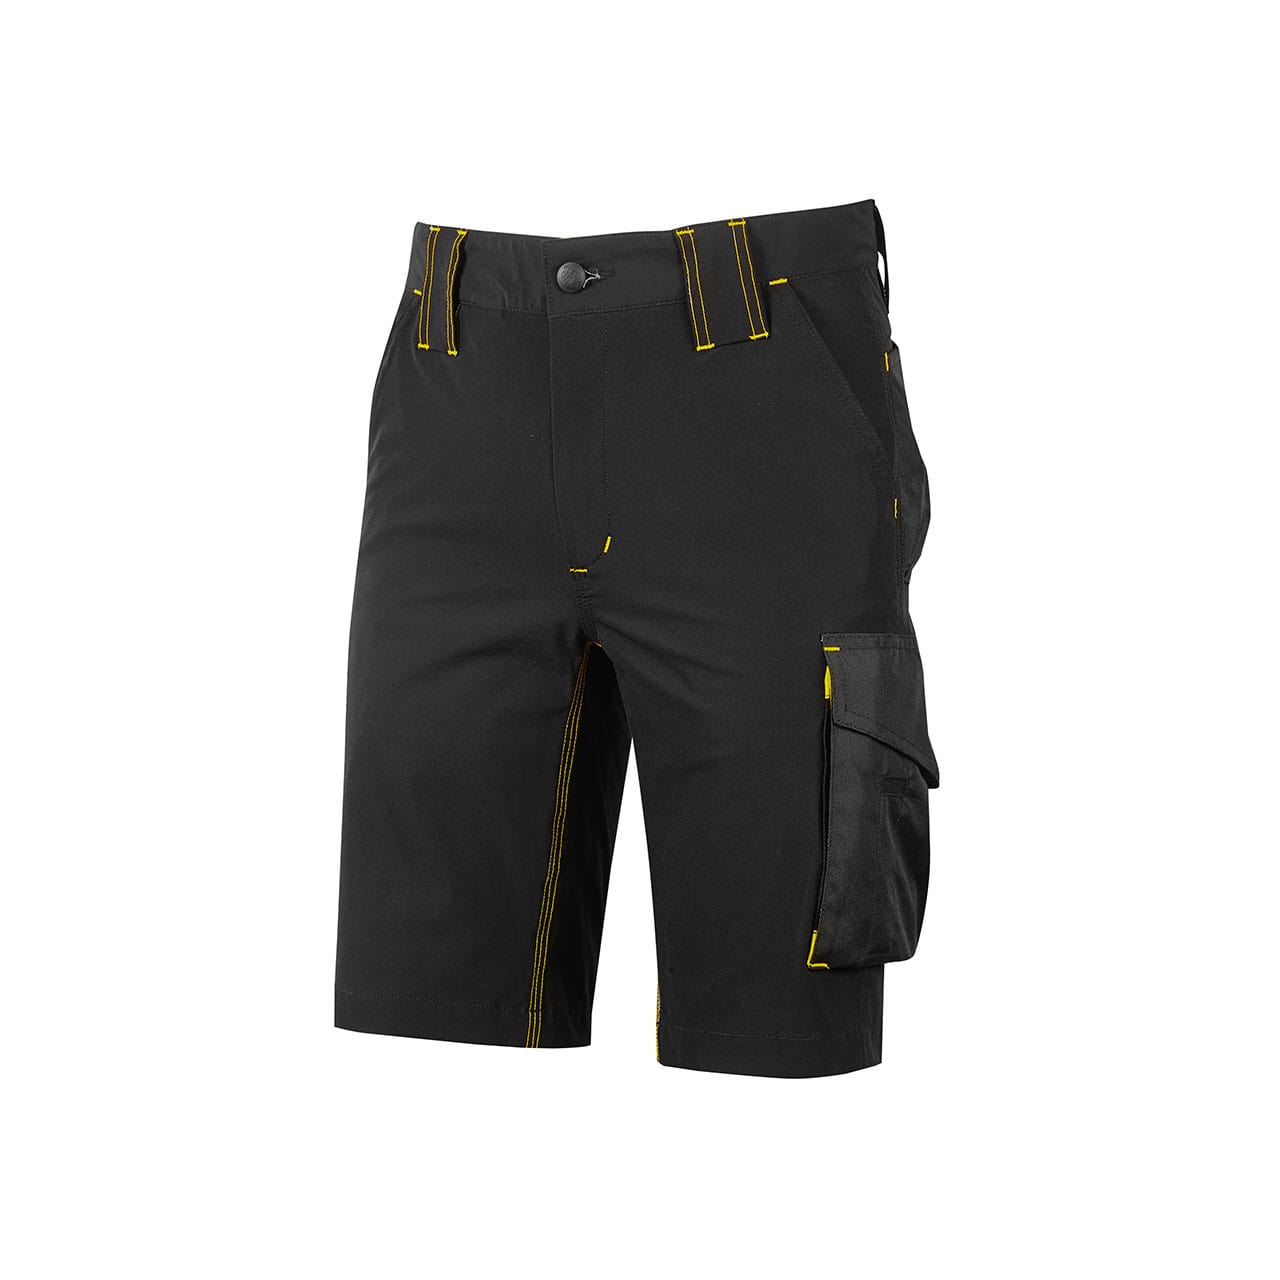 Pantaloni corti da lavoro U-Power Mercury nero giallo